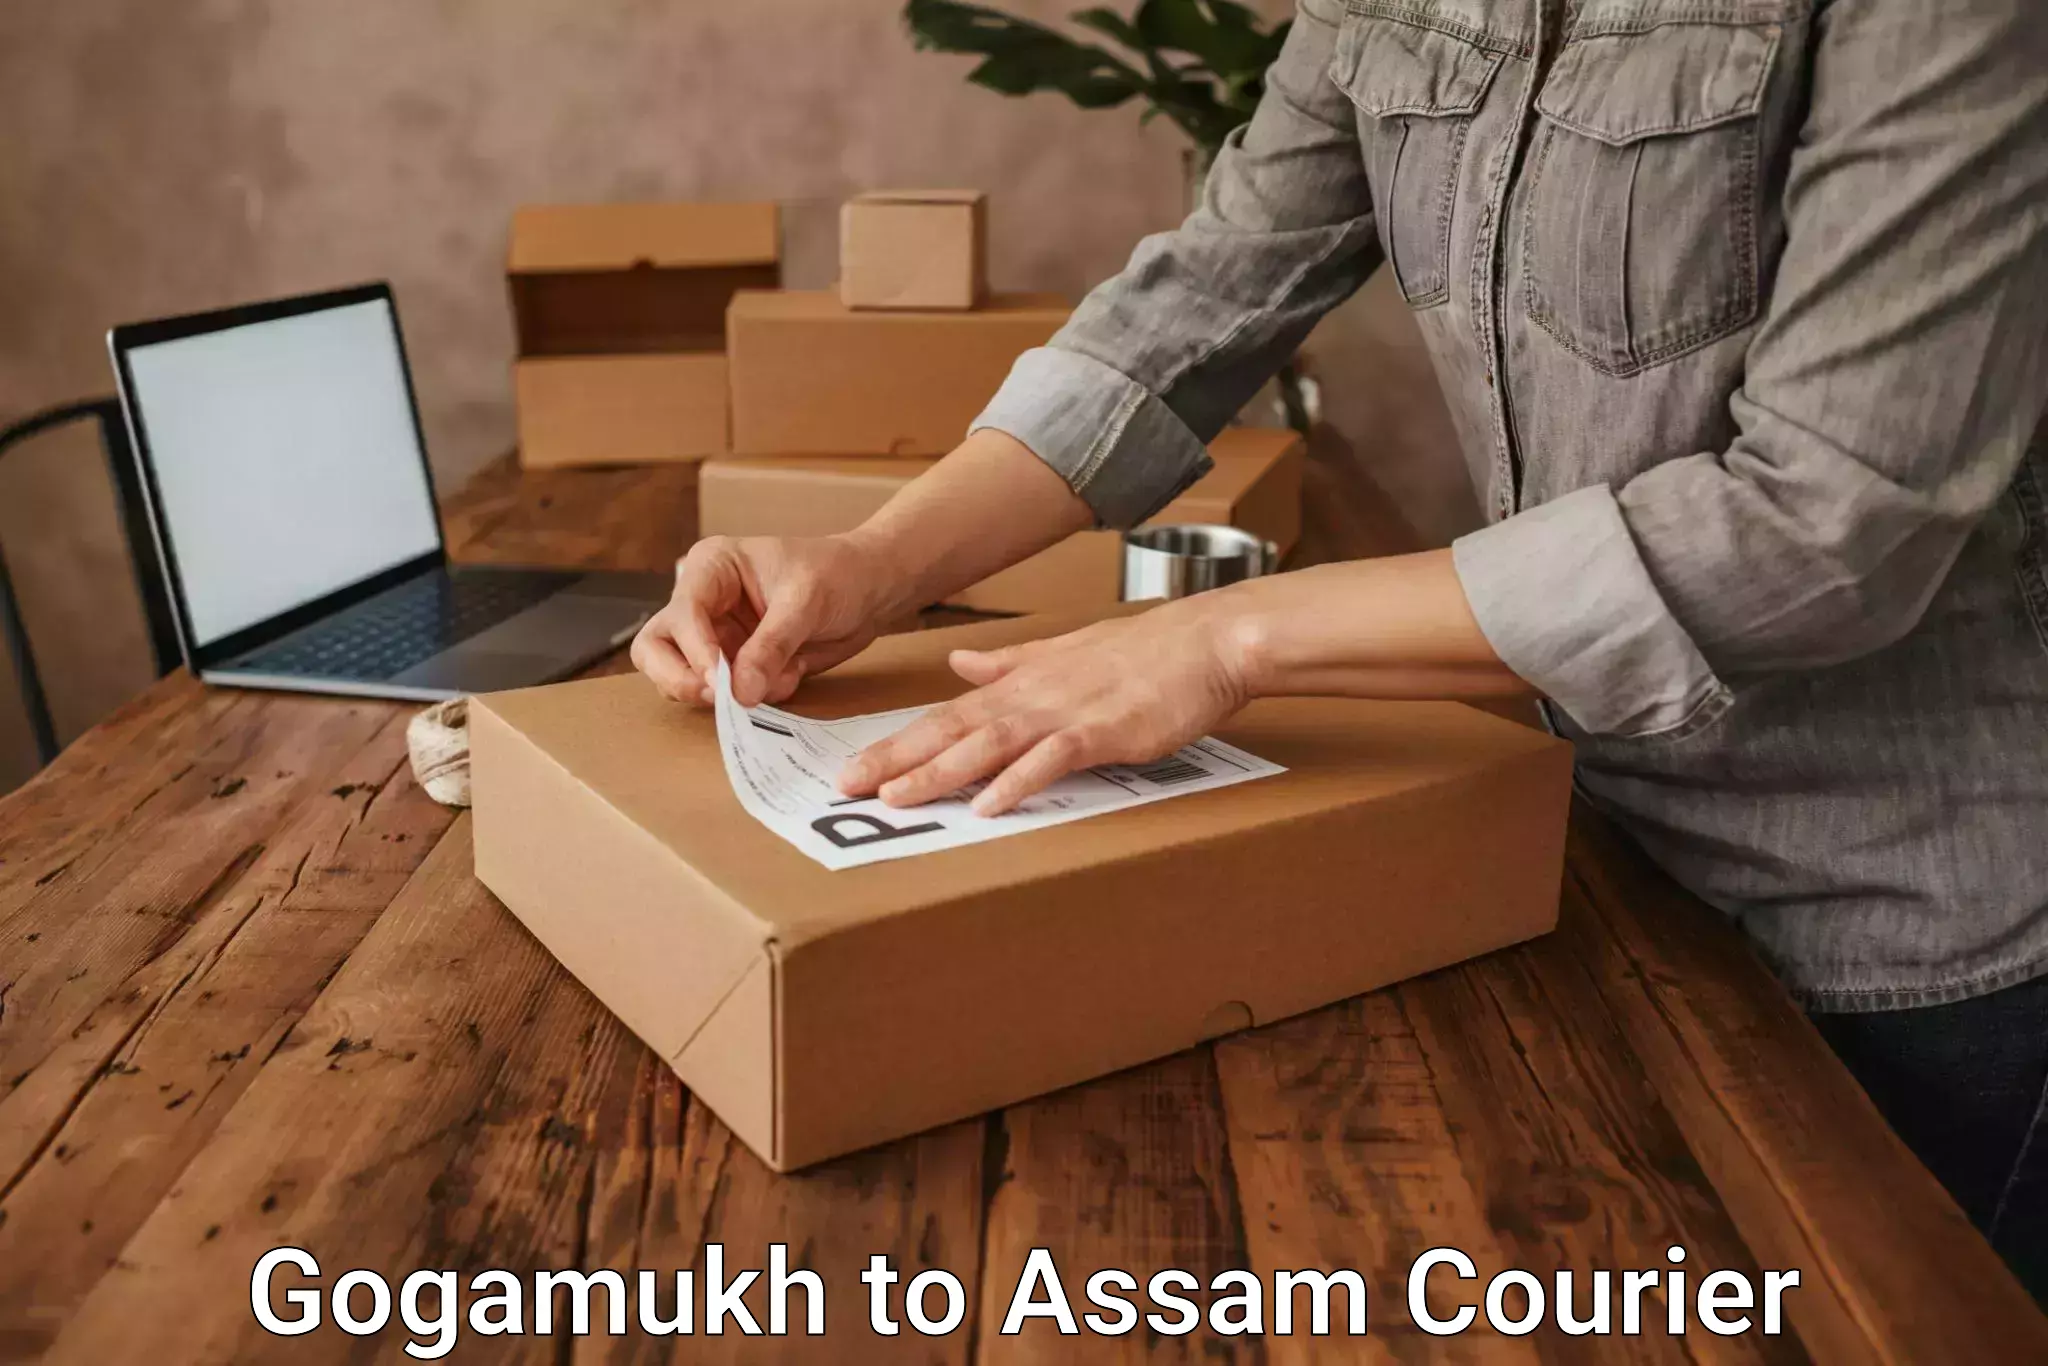 International courier rates Gogamukh to Jorhat